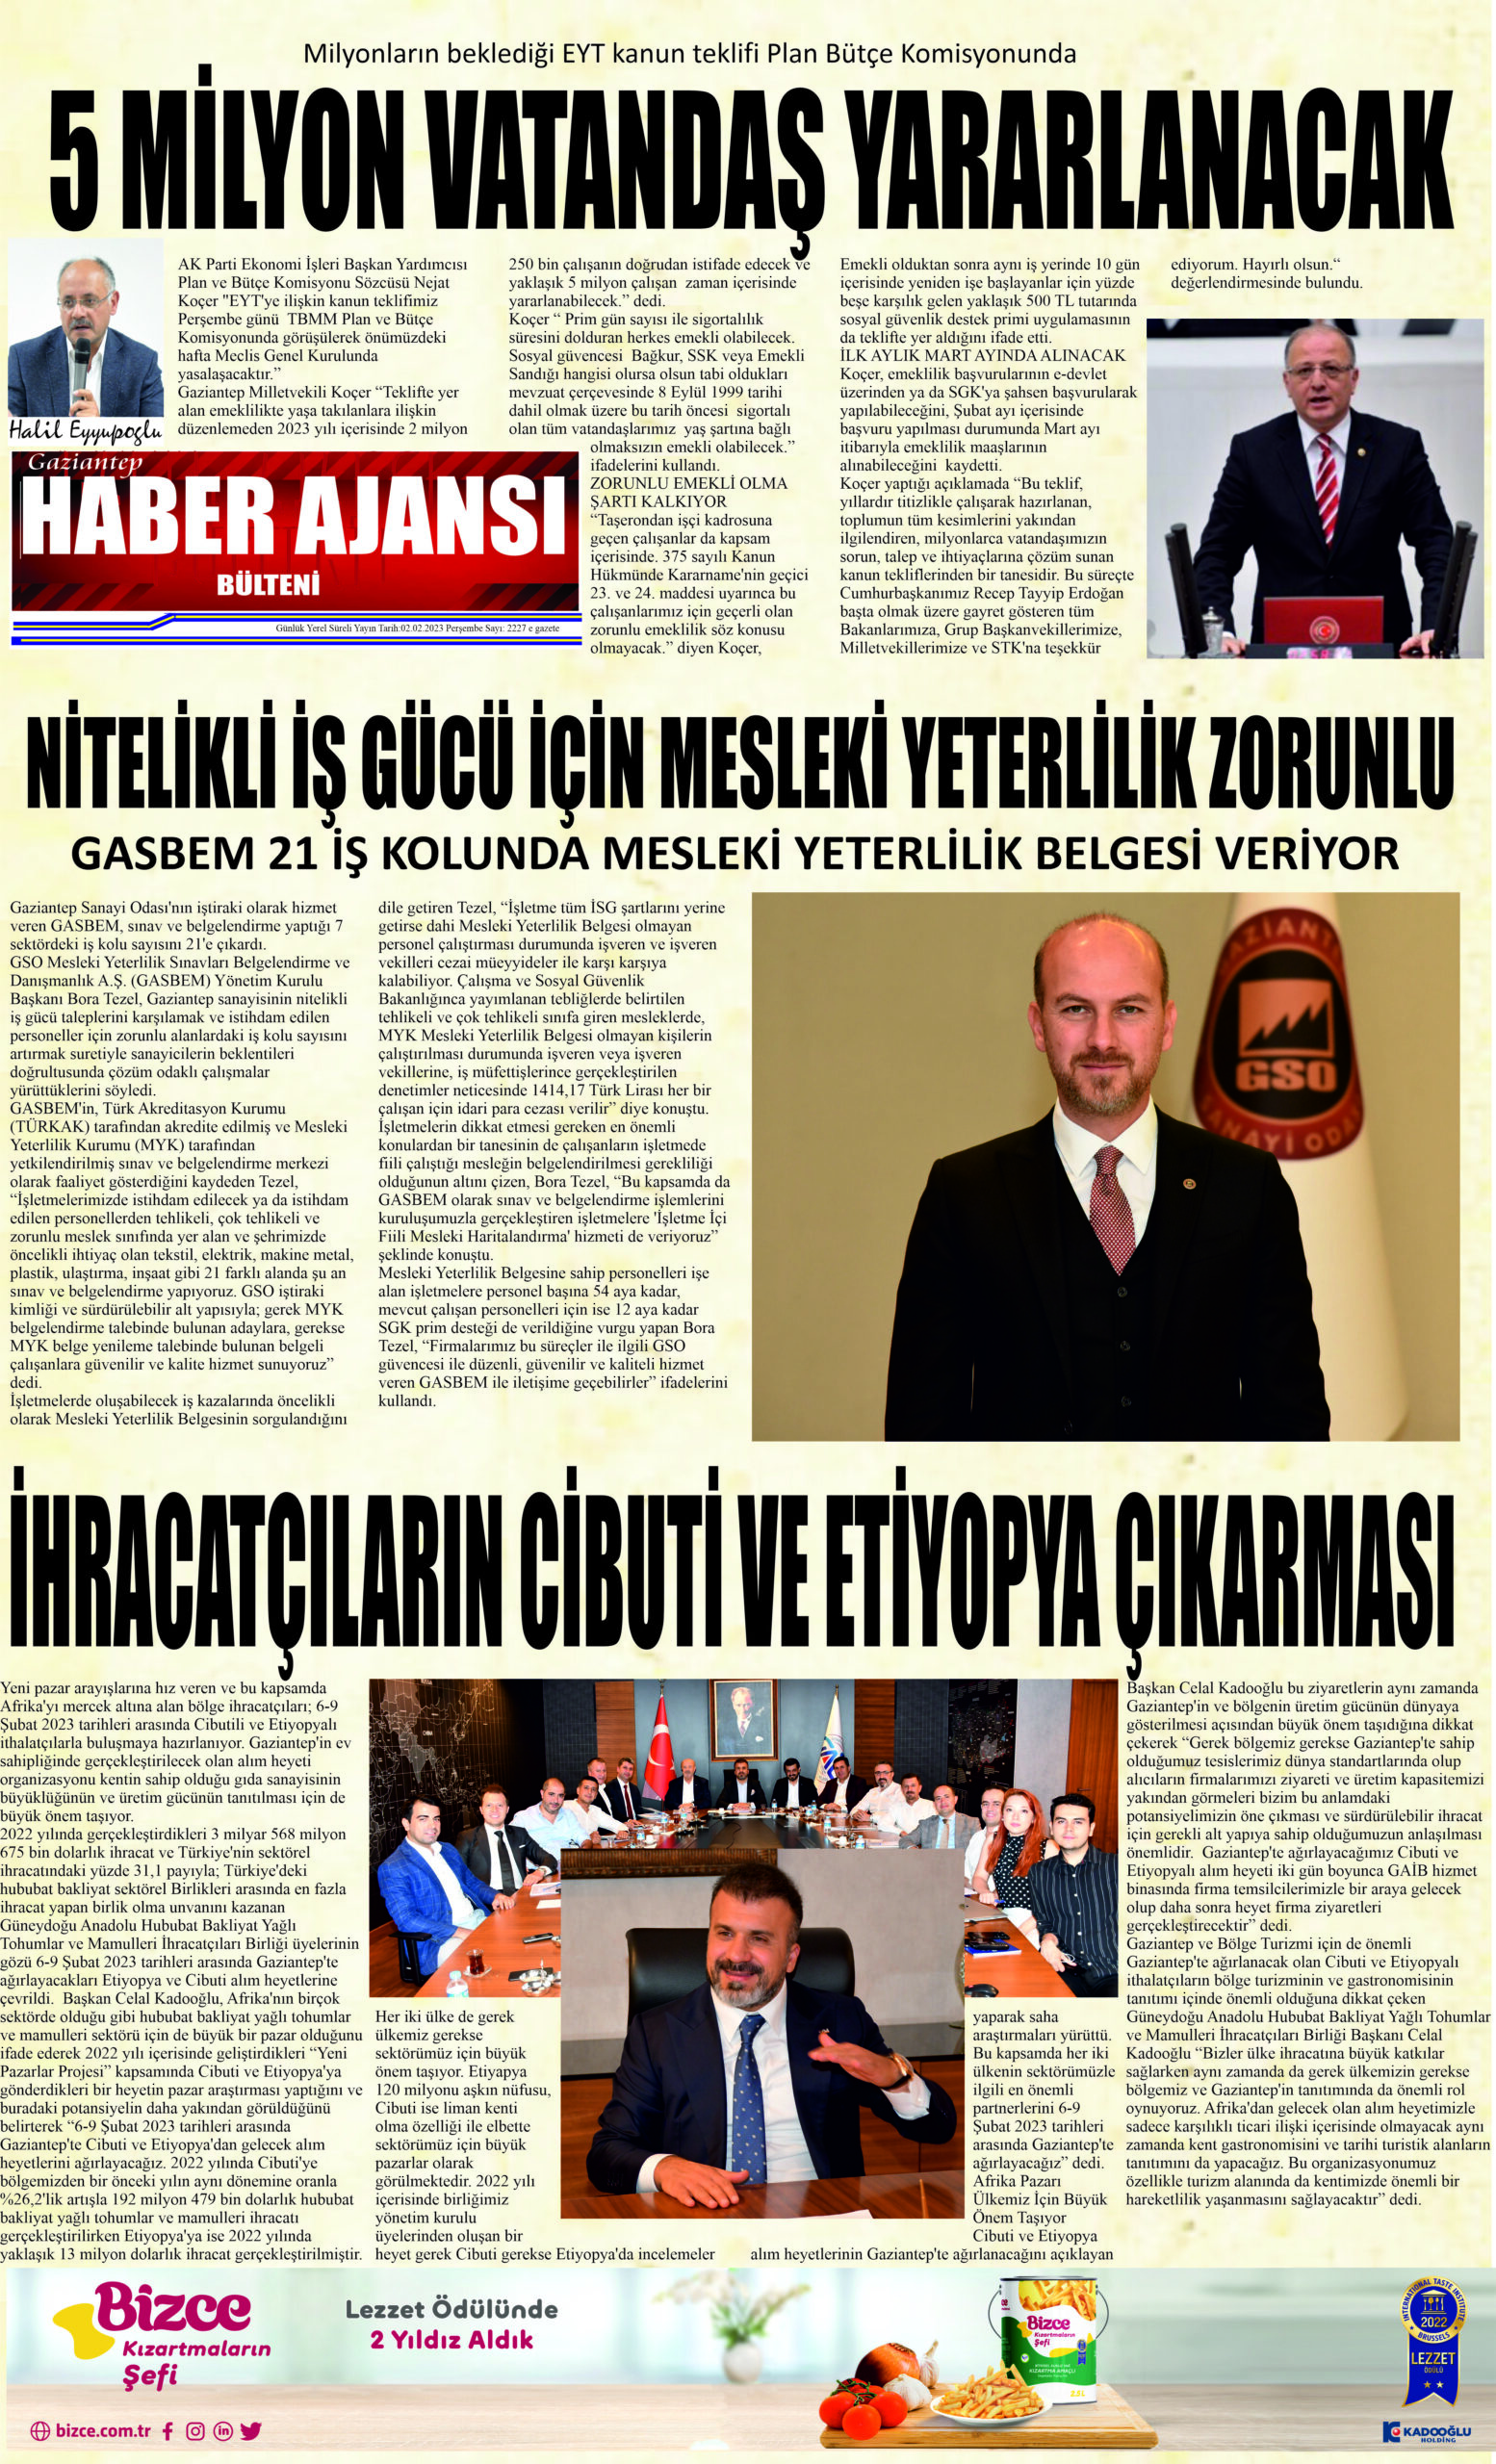 Gaziantep Haber Ajansı Bülteni Perşembe 02.02.2023 e gazete